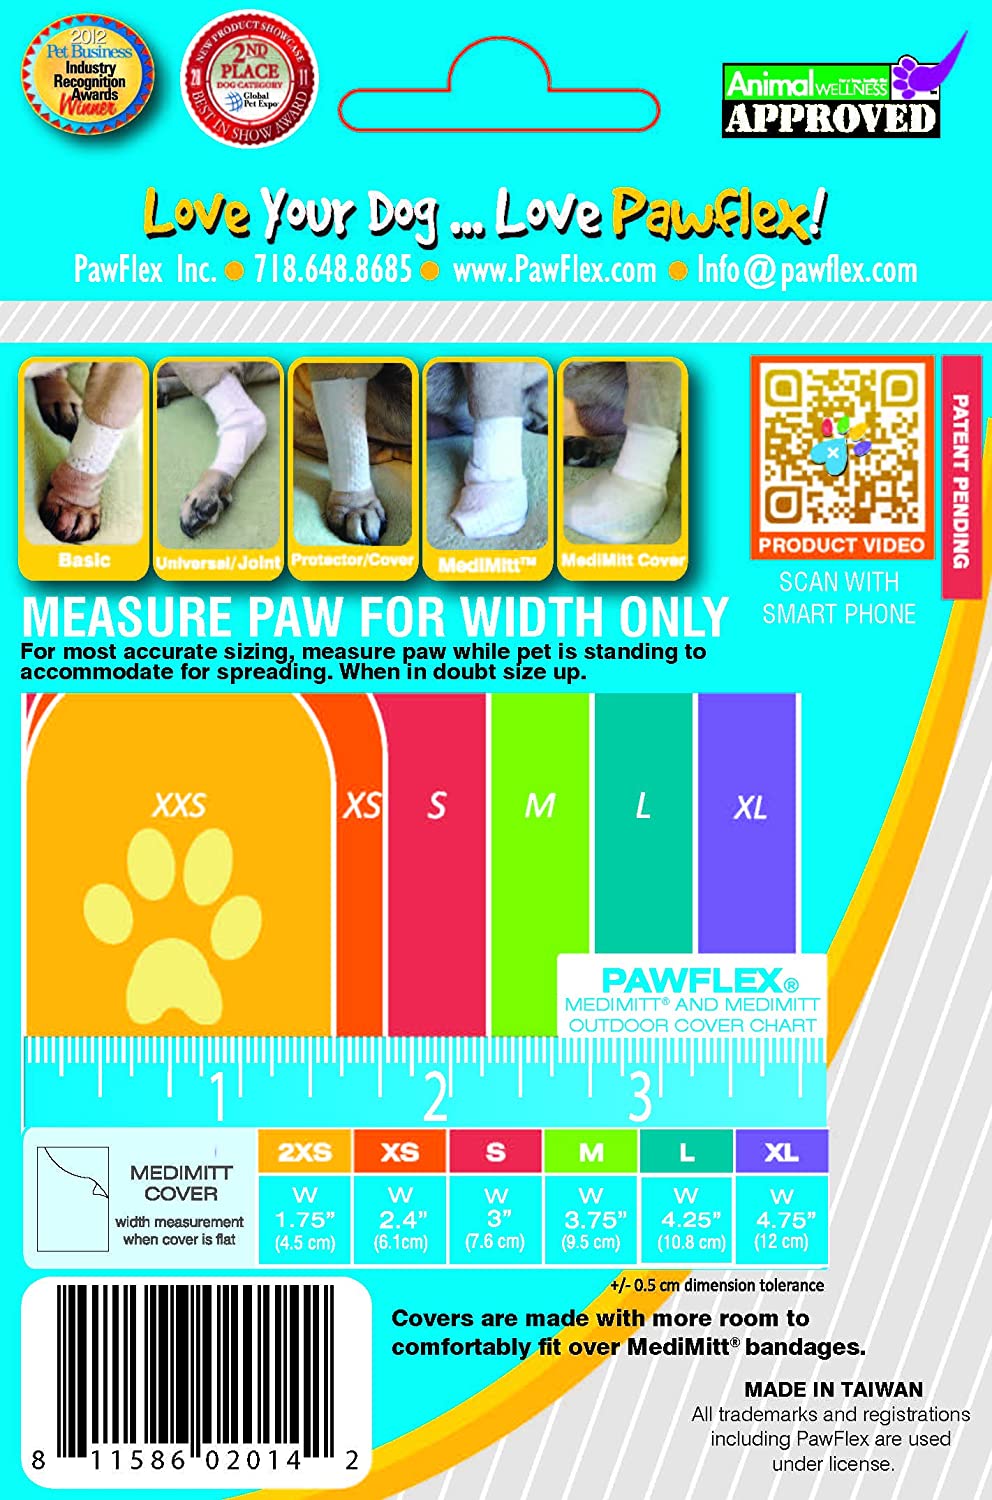 MediMitt Outdoor cover, pet bandages, dog bandages, pawflex, how to use pet bandages, pet supply